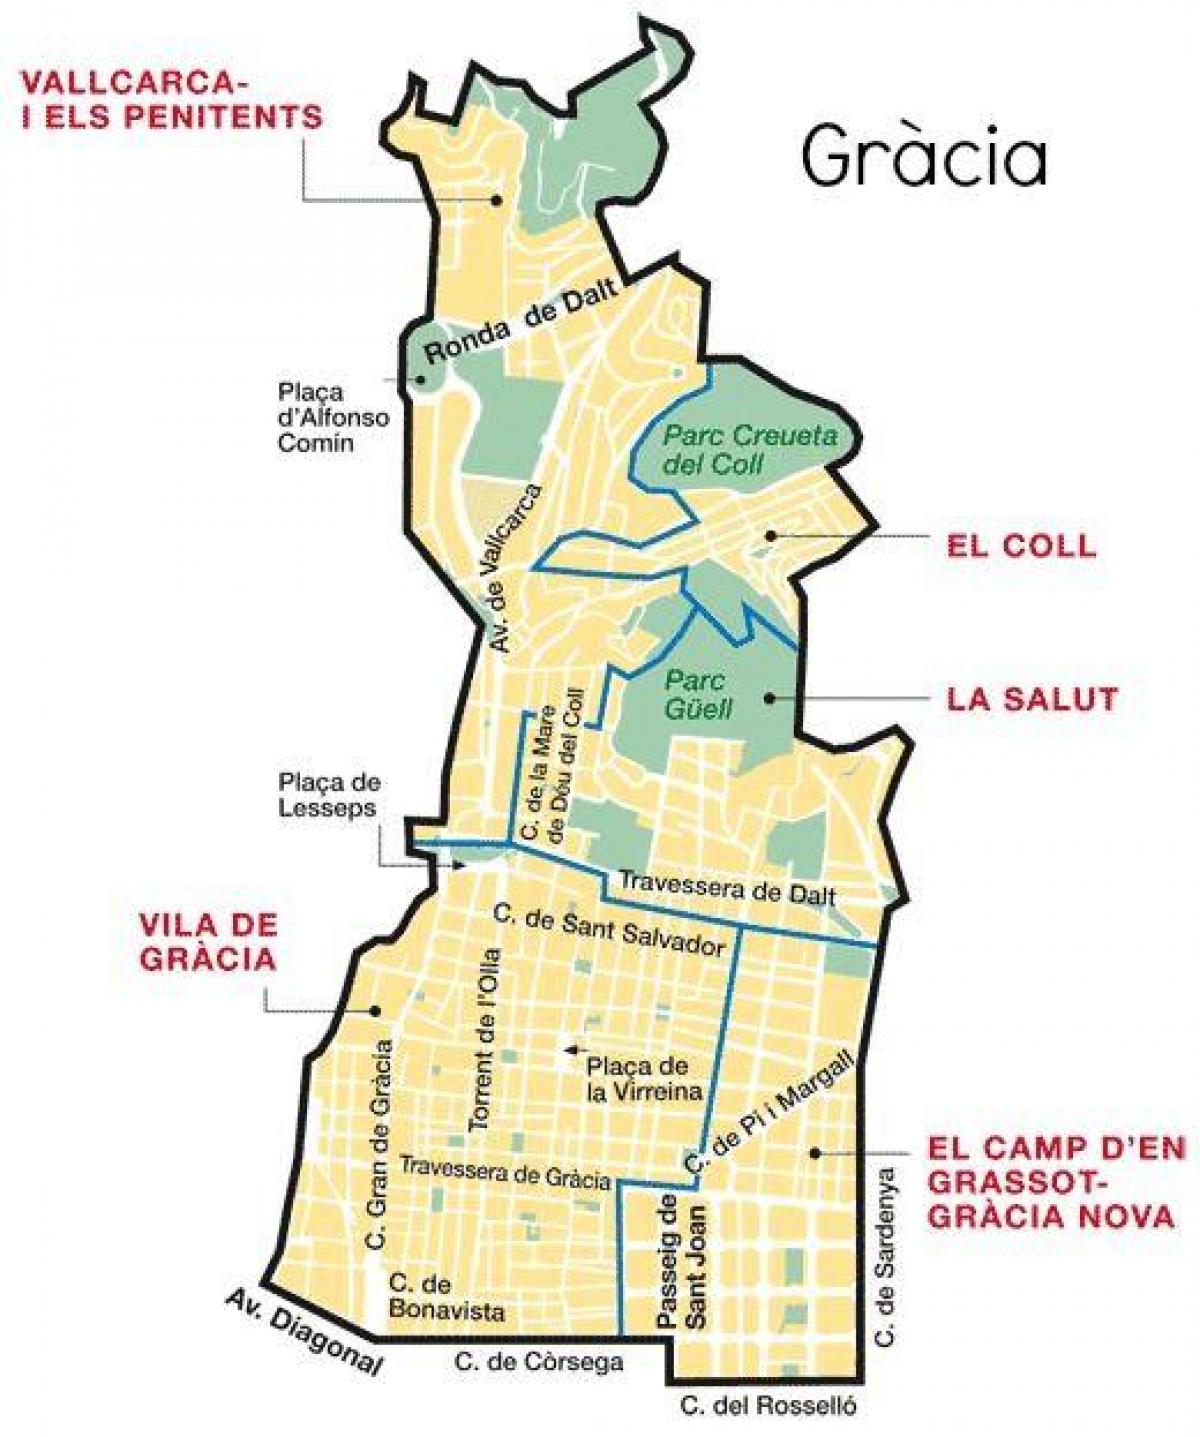 خريطة غراسيا في برشلونة